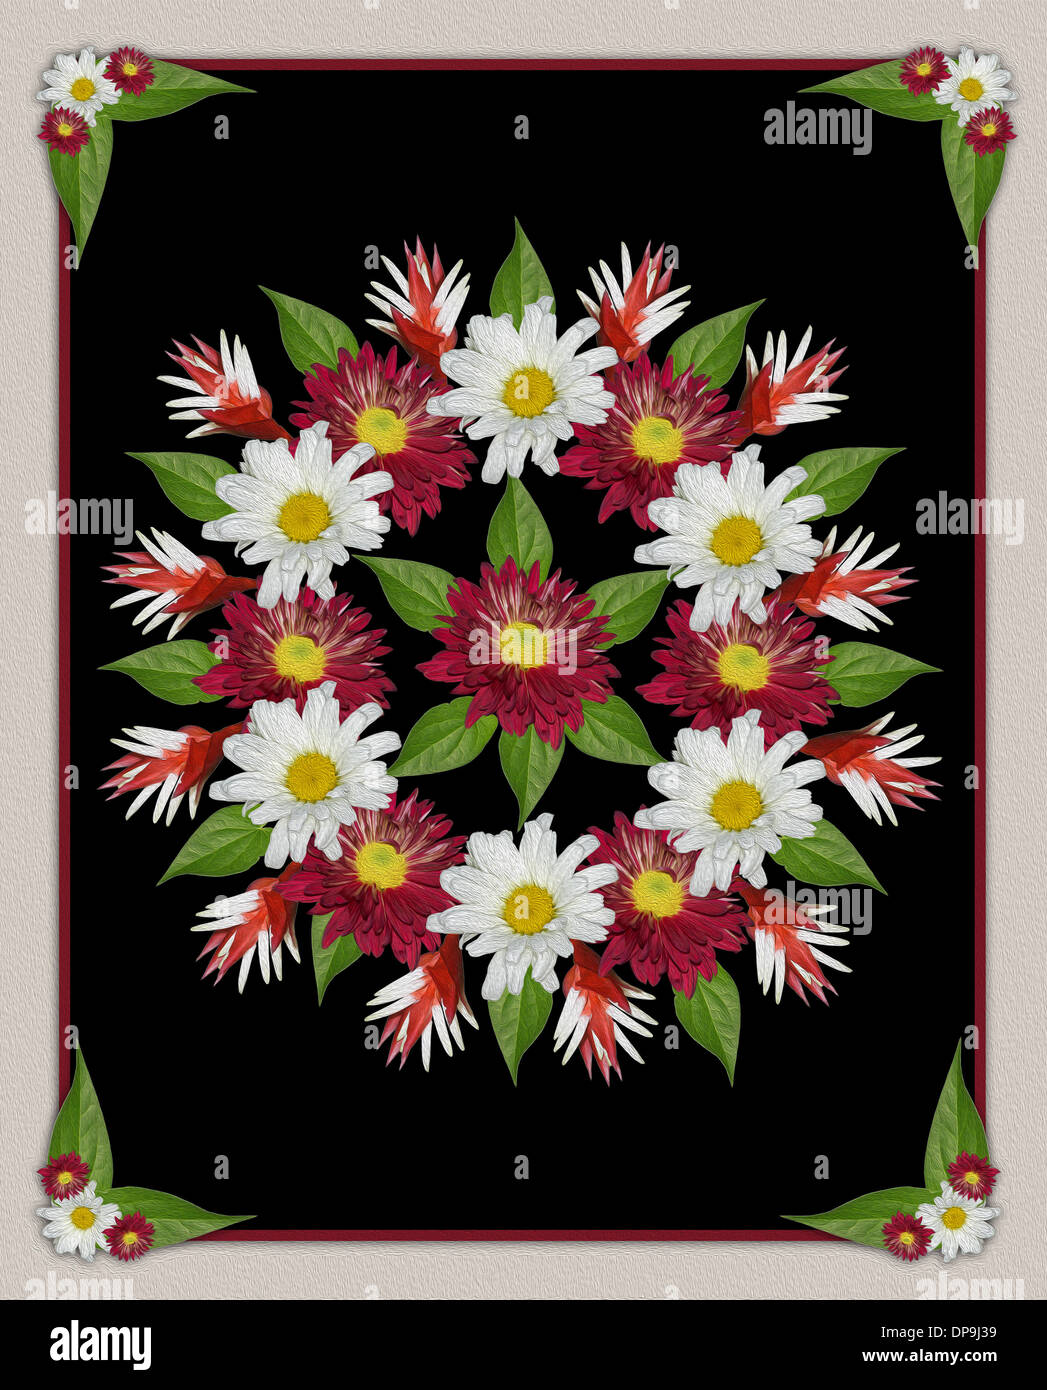 Spektakuläre Blumenkunst - geometrisches Design mit rote und weiße Chrysanthemen Blüten und Blätter auf schwarzem Hintergrund Stockfoto